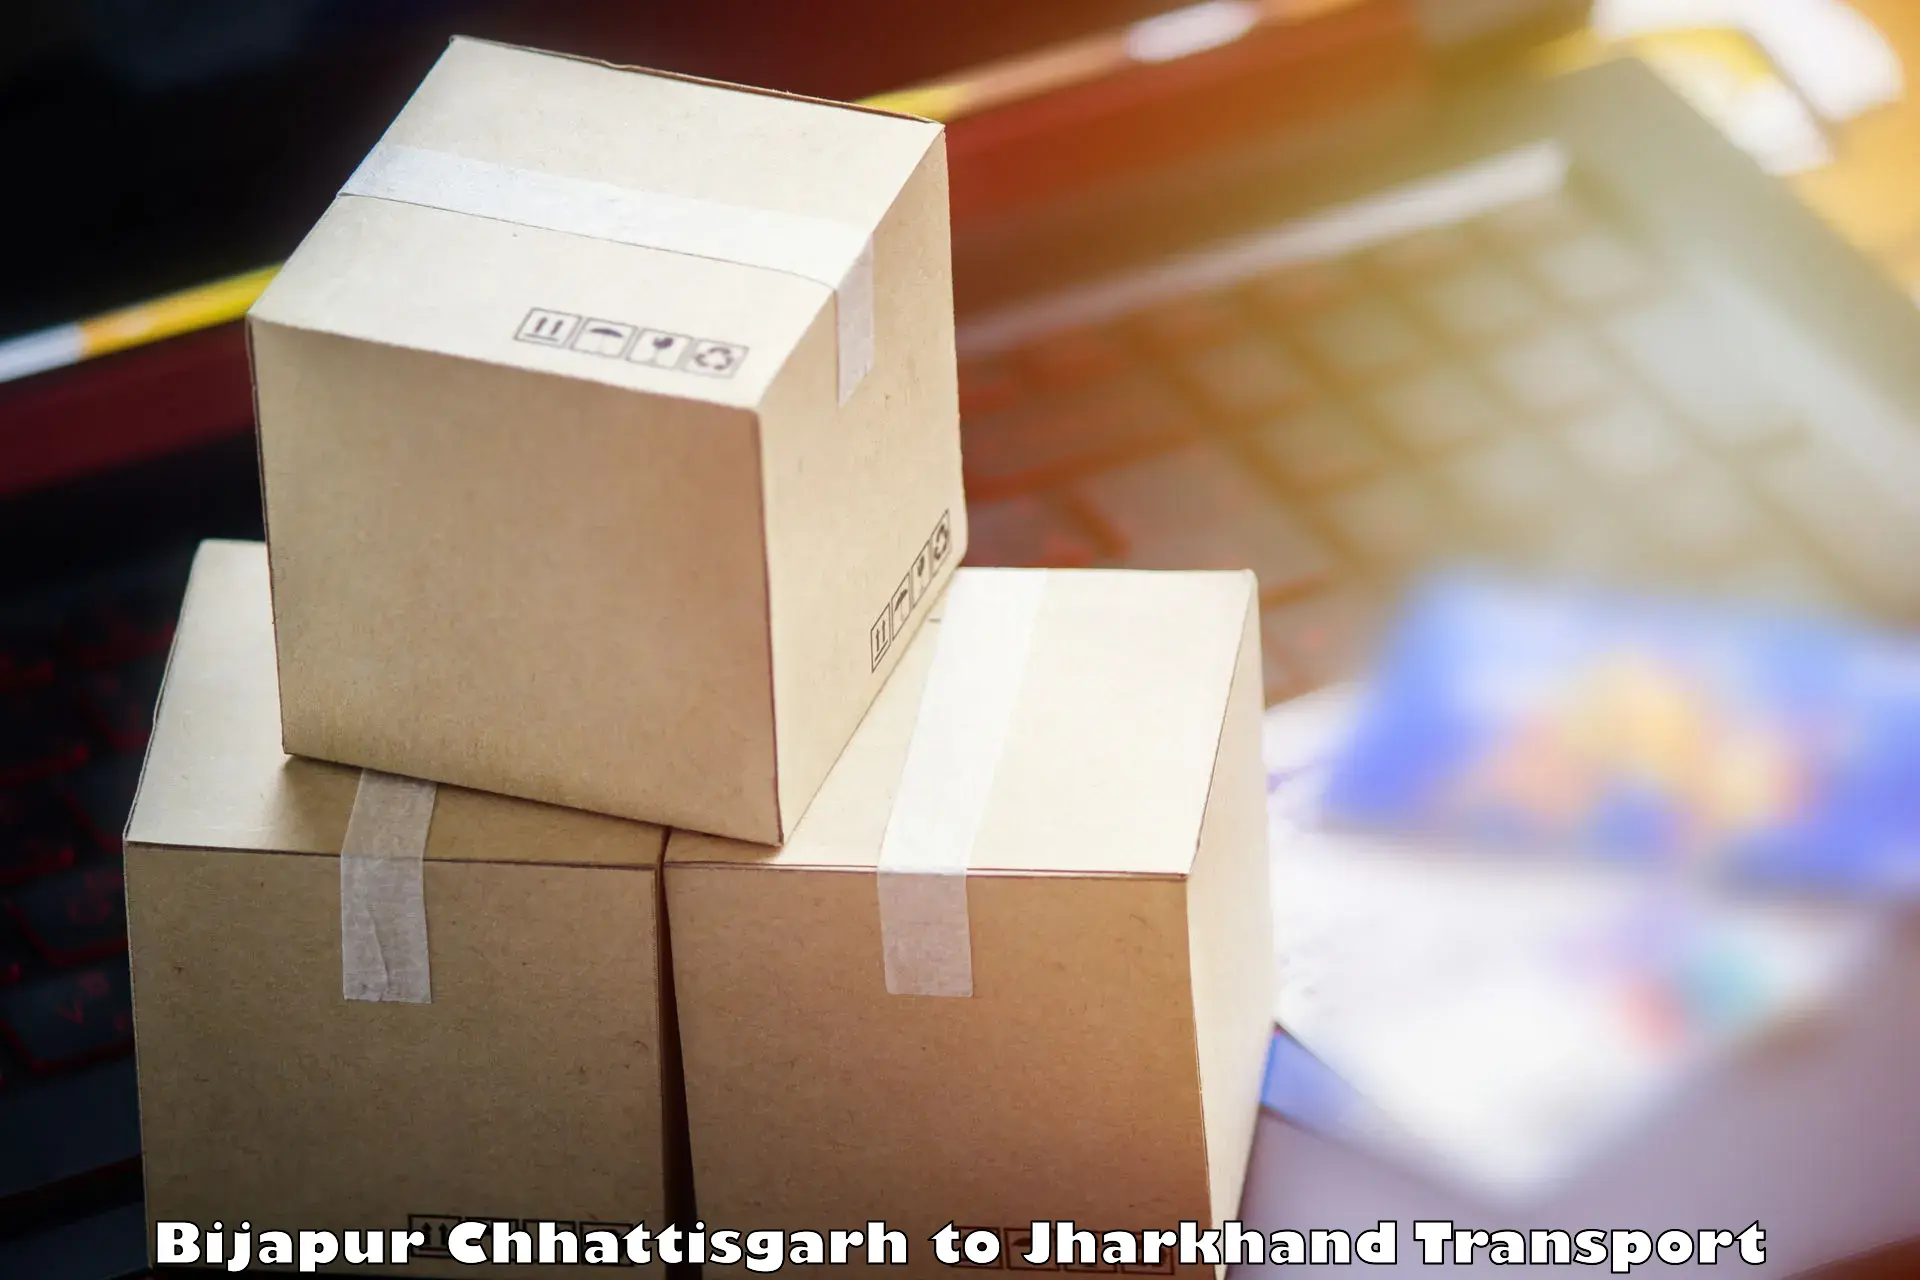 Delivery service Bijapur Chhattisgarh to Tandwa